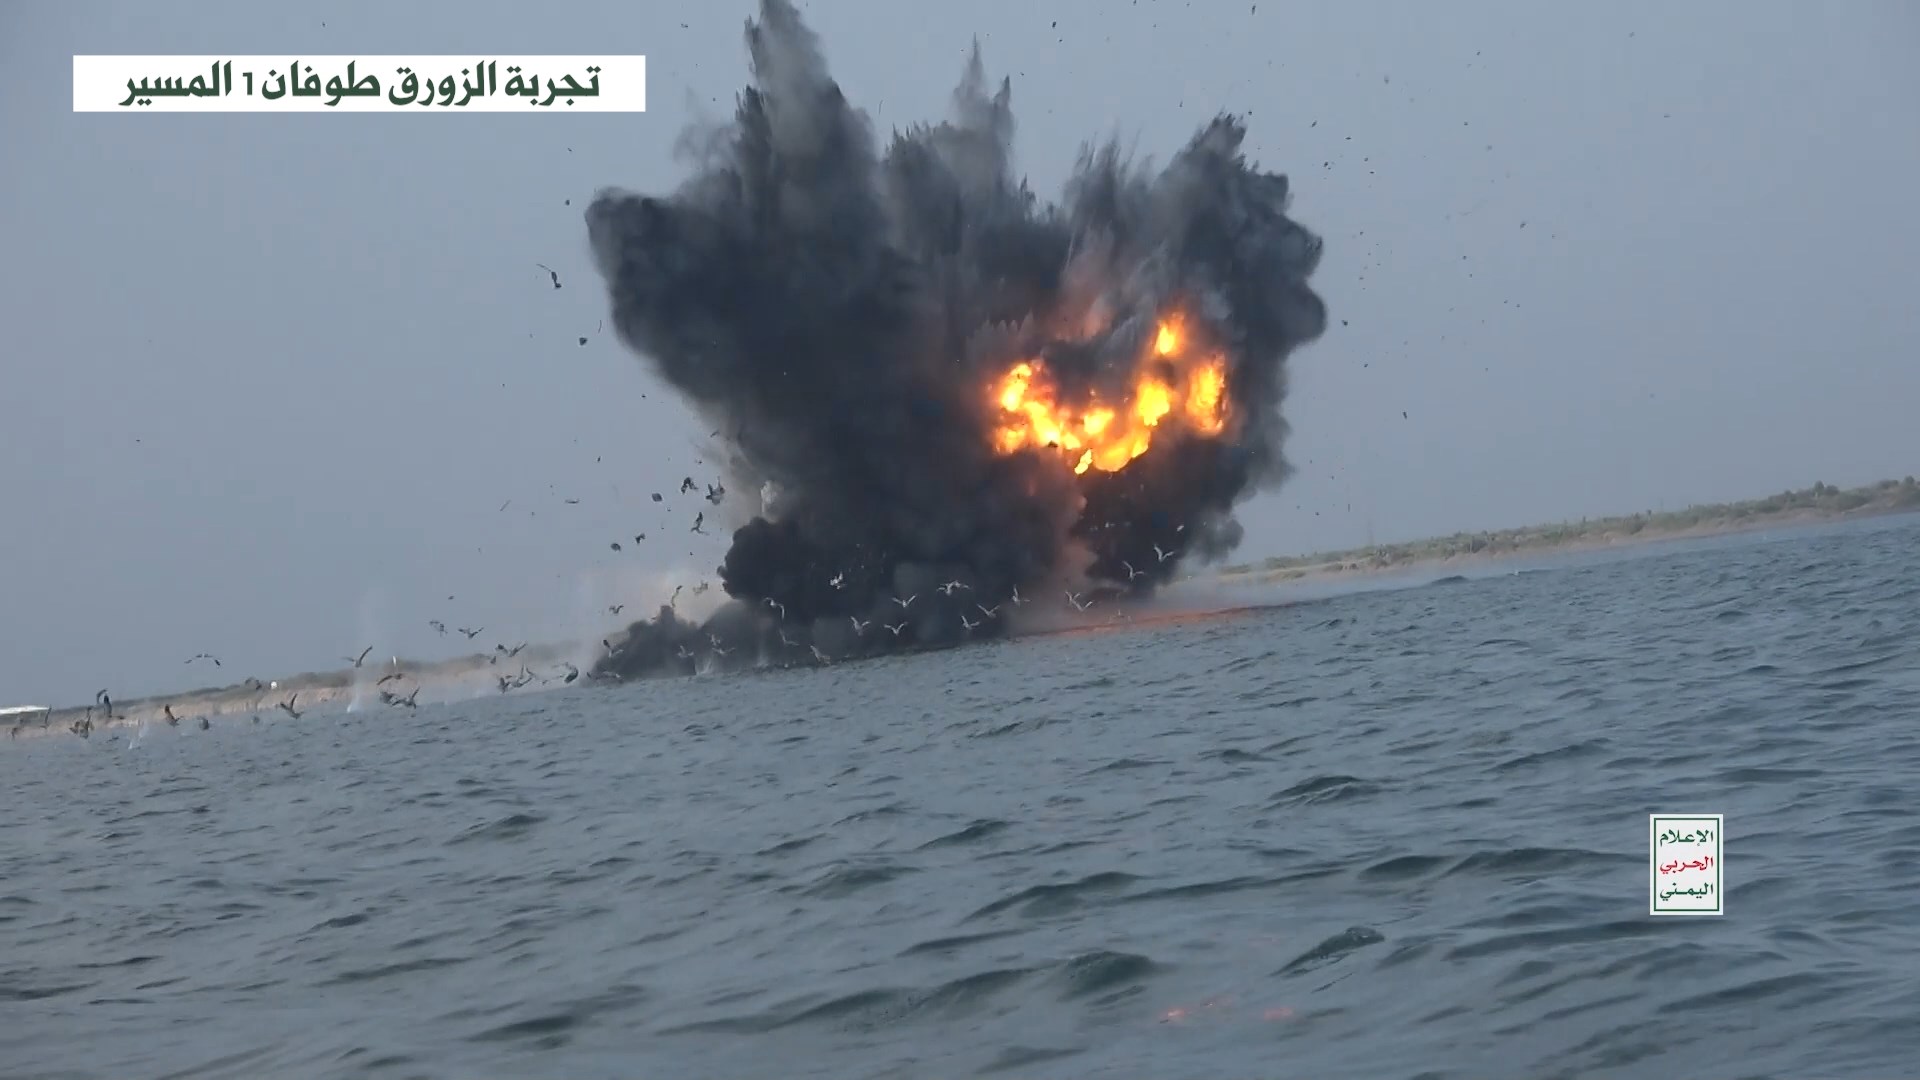 القوات المسلحة اليمنية تستهدف سفينة في البحر العربي واستهداف حاملة الطائرات الأمريكية "آيزنهاور" (فيديو + أحداثيات السفينة)